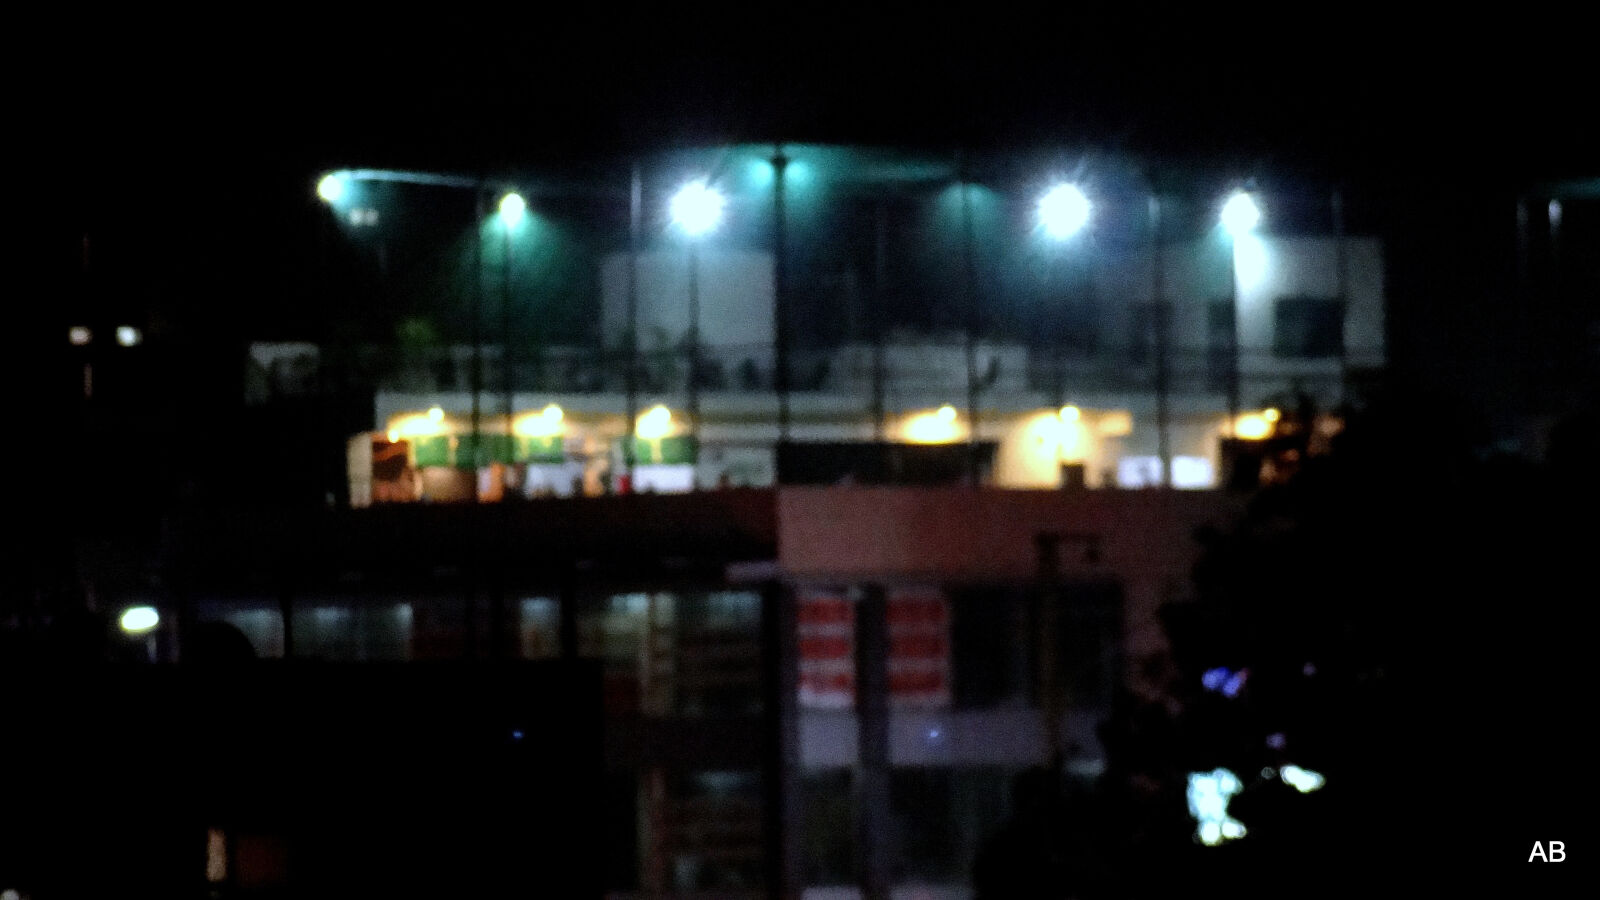 Sony Cyber-shot DSC-HX9V sample photo. Night, lighting photography